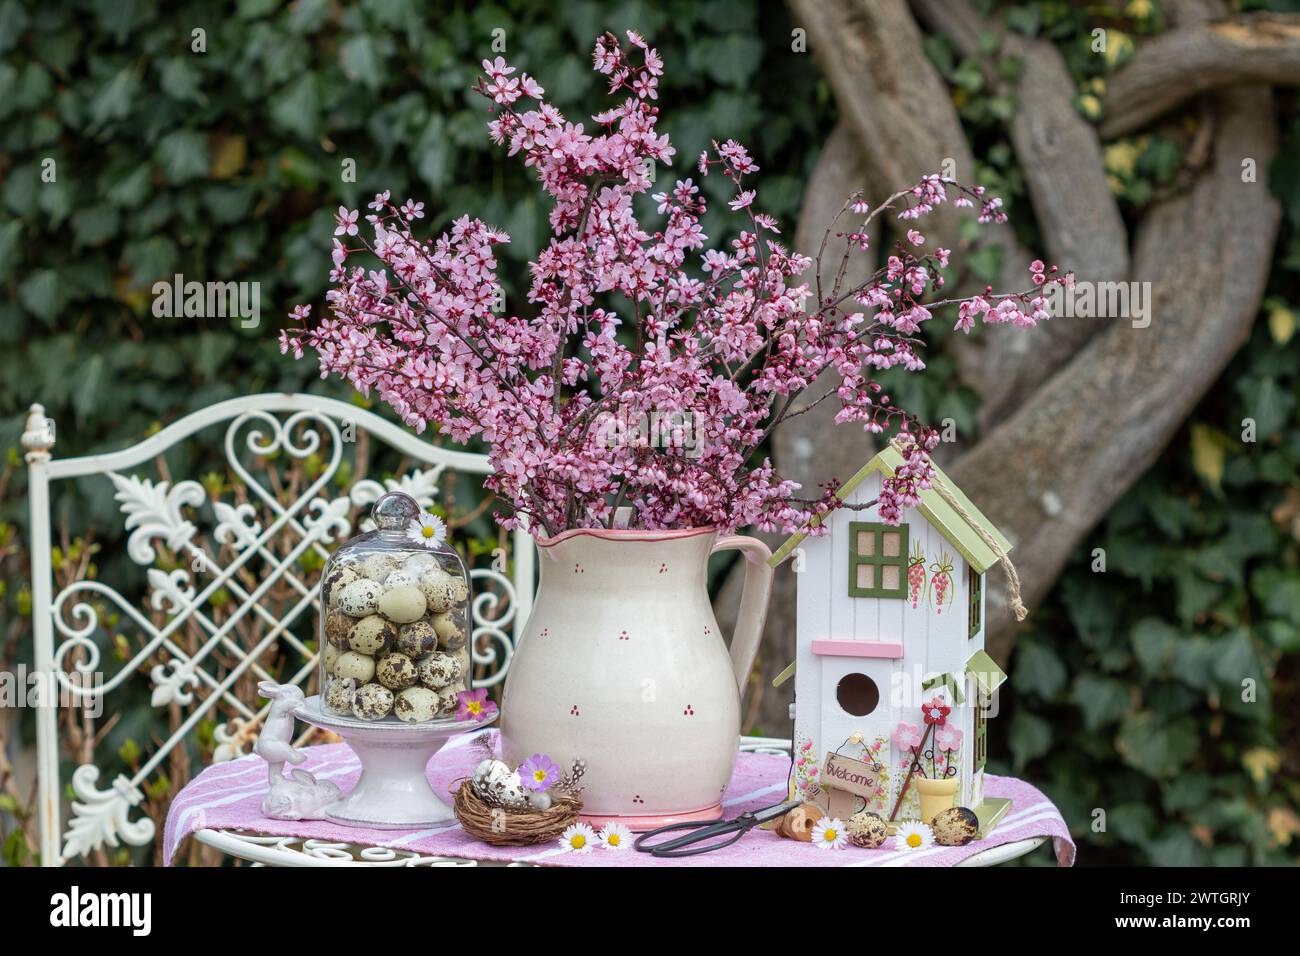 Arrangement mit Blumenstrauß aus violetter Pflaume, Vogelhaus und Wachteleiern Stockfoto